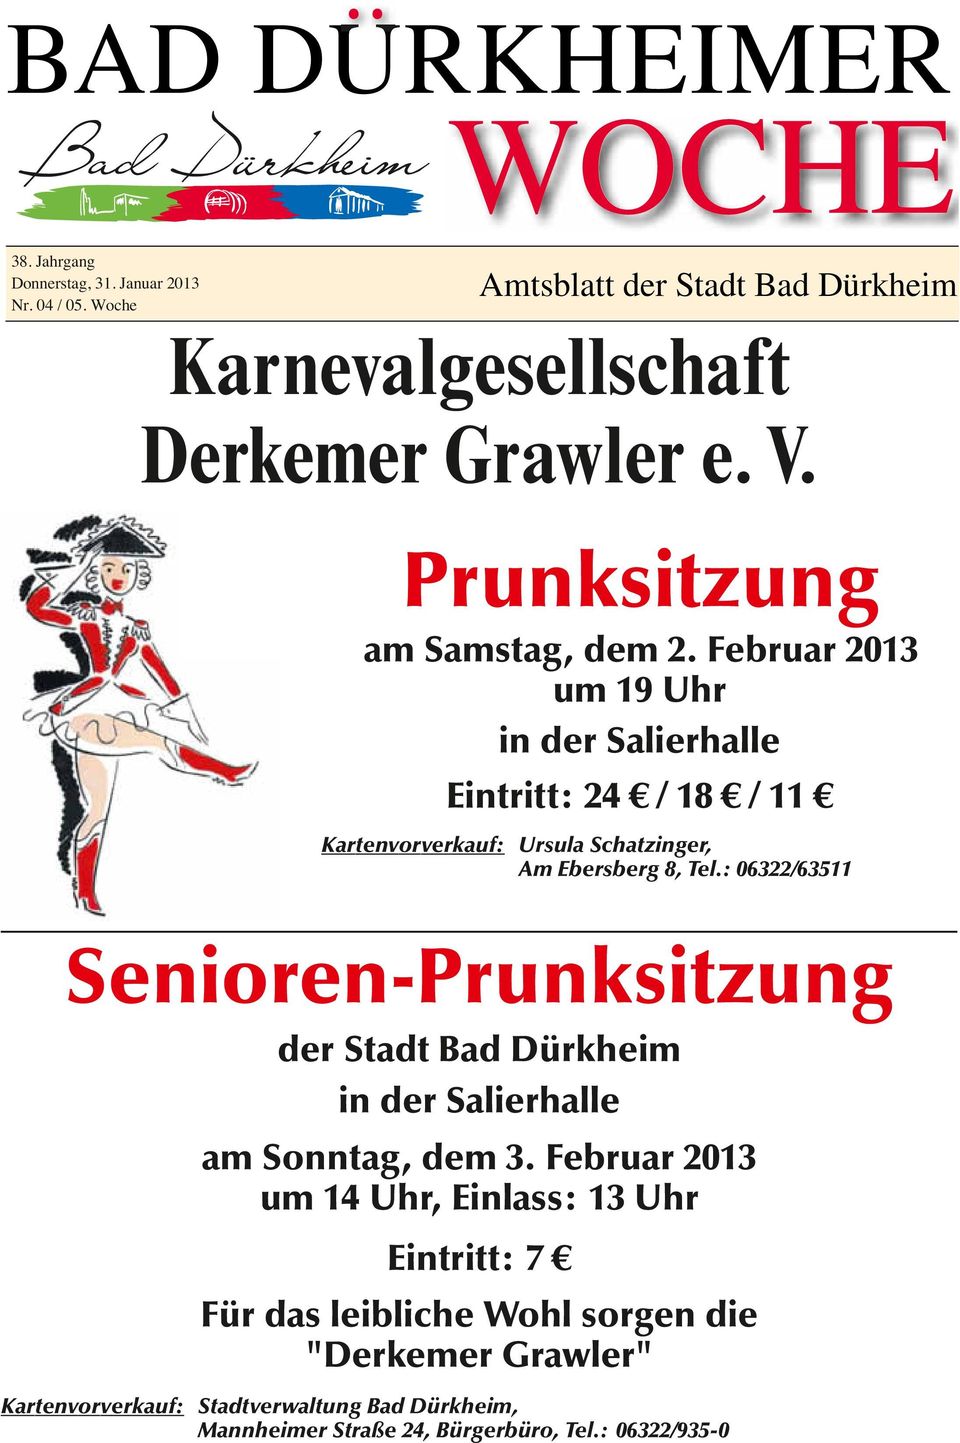 Februar 2013 um 19 Uhr in der Salierhalle Eintritt: 24 / 18 / 11 Kartenvorverkauf: Ursula Schatzinger, Am Ebersberg 8, Tel.